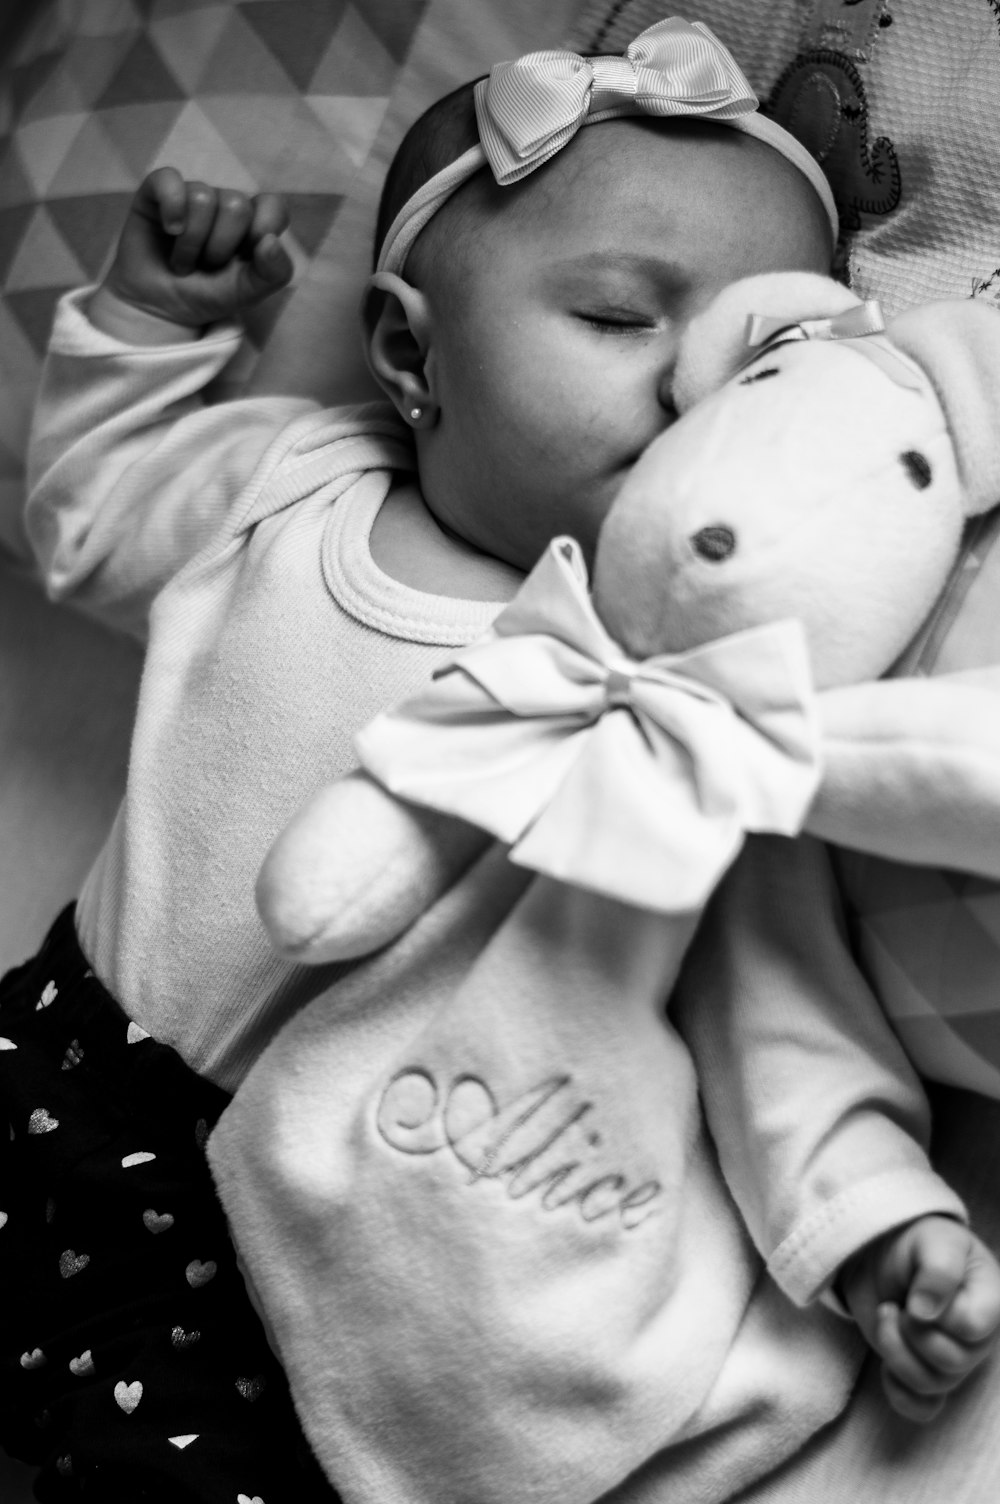 ワンジーを着た赤ちゃんのグレースケール写真